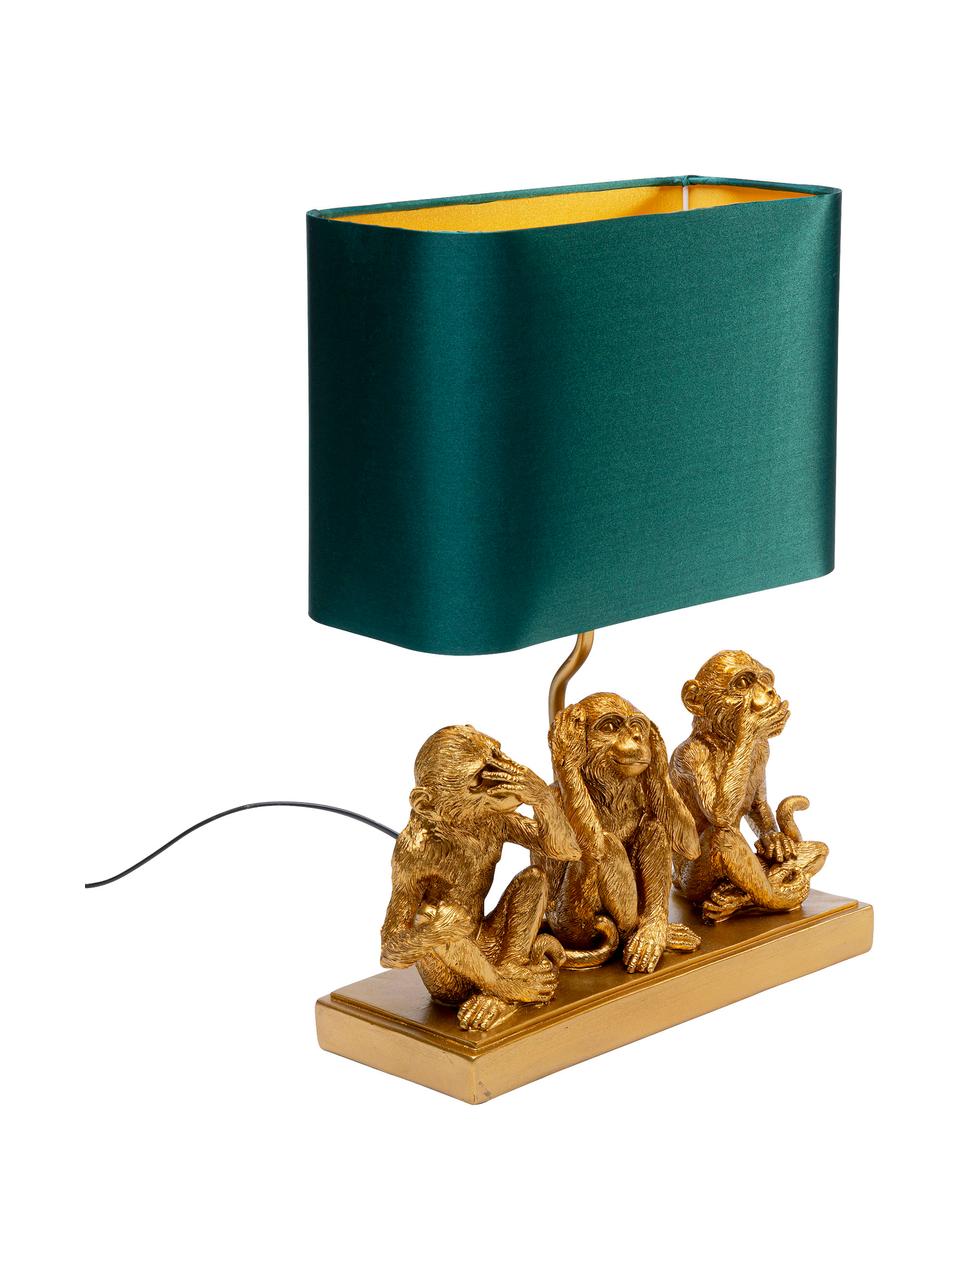 Tischlampe Animal Three Monkey, Lampenschirm: Textil, Goldfarben, Grün, B 34 x H 45 cm